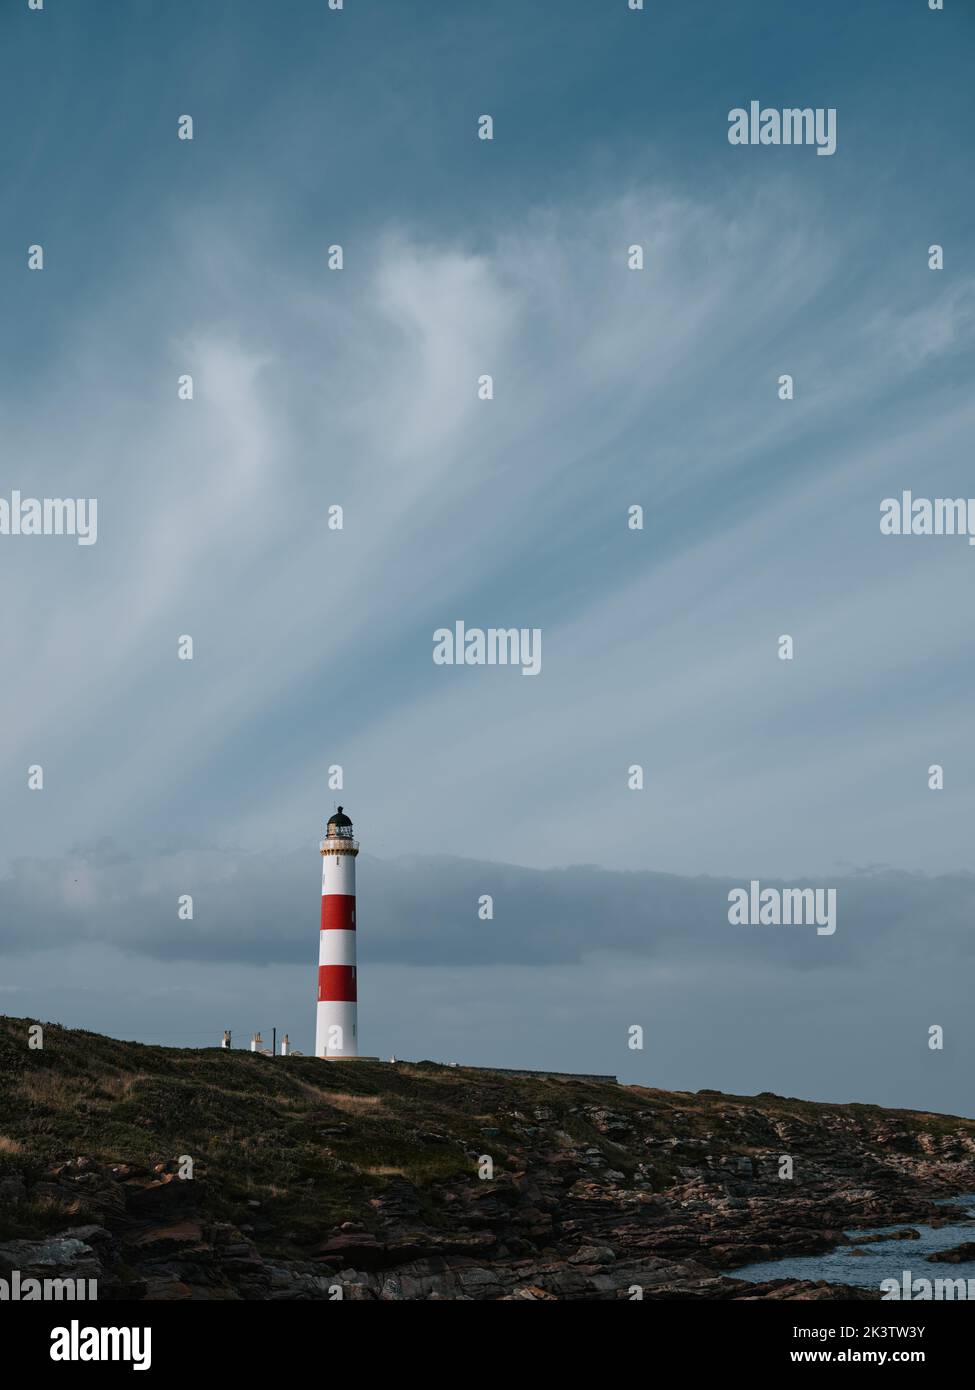 Mare's queues sur un nuage de cirrus au-dessus de Tarbat Ness Lighthouse, Tarbat Ness, Tain & Easter Ross, Cromartyshire, Écosse Royaume-Uni - nuages paysage de ciel Banque D'Images